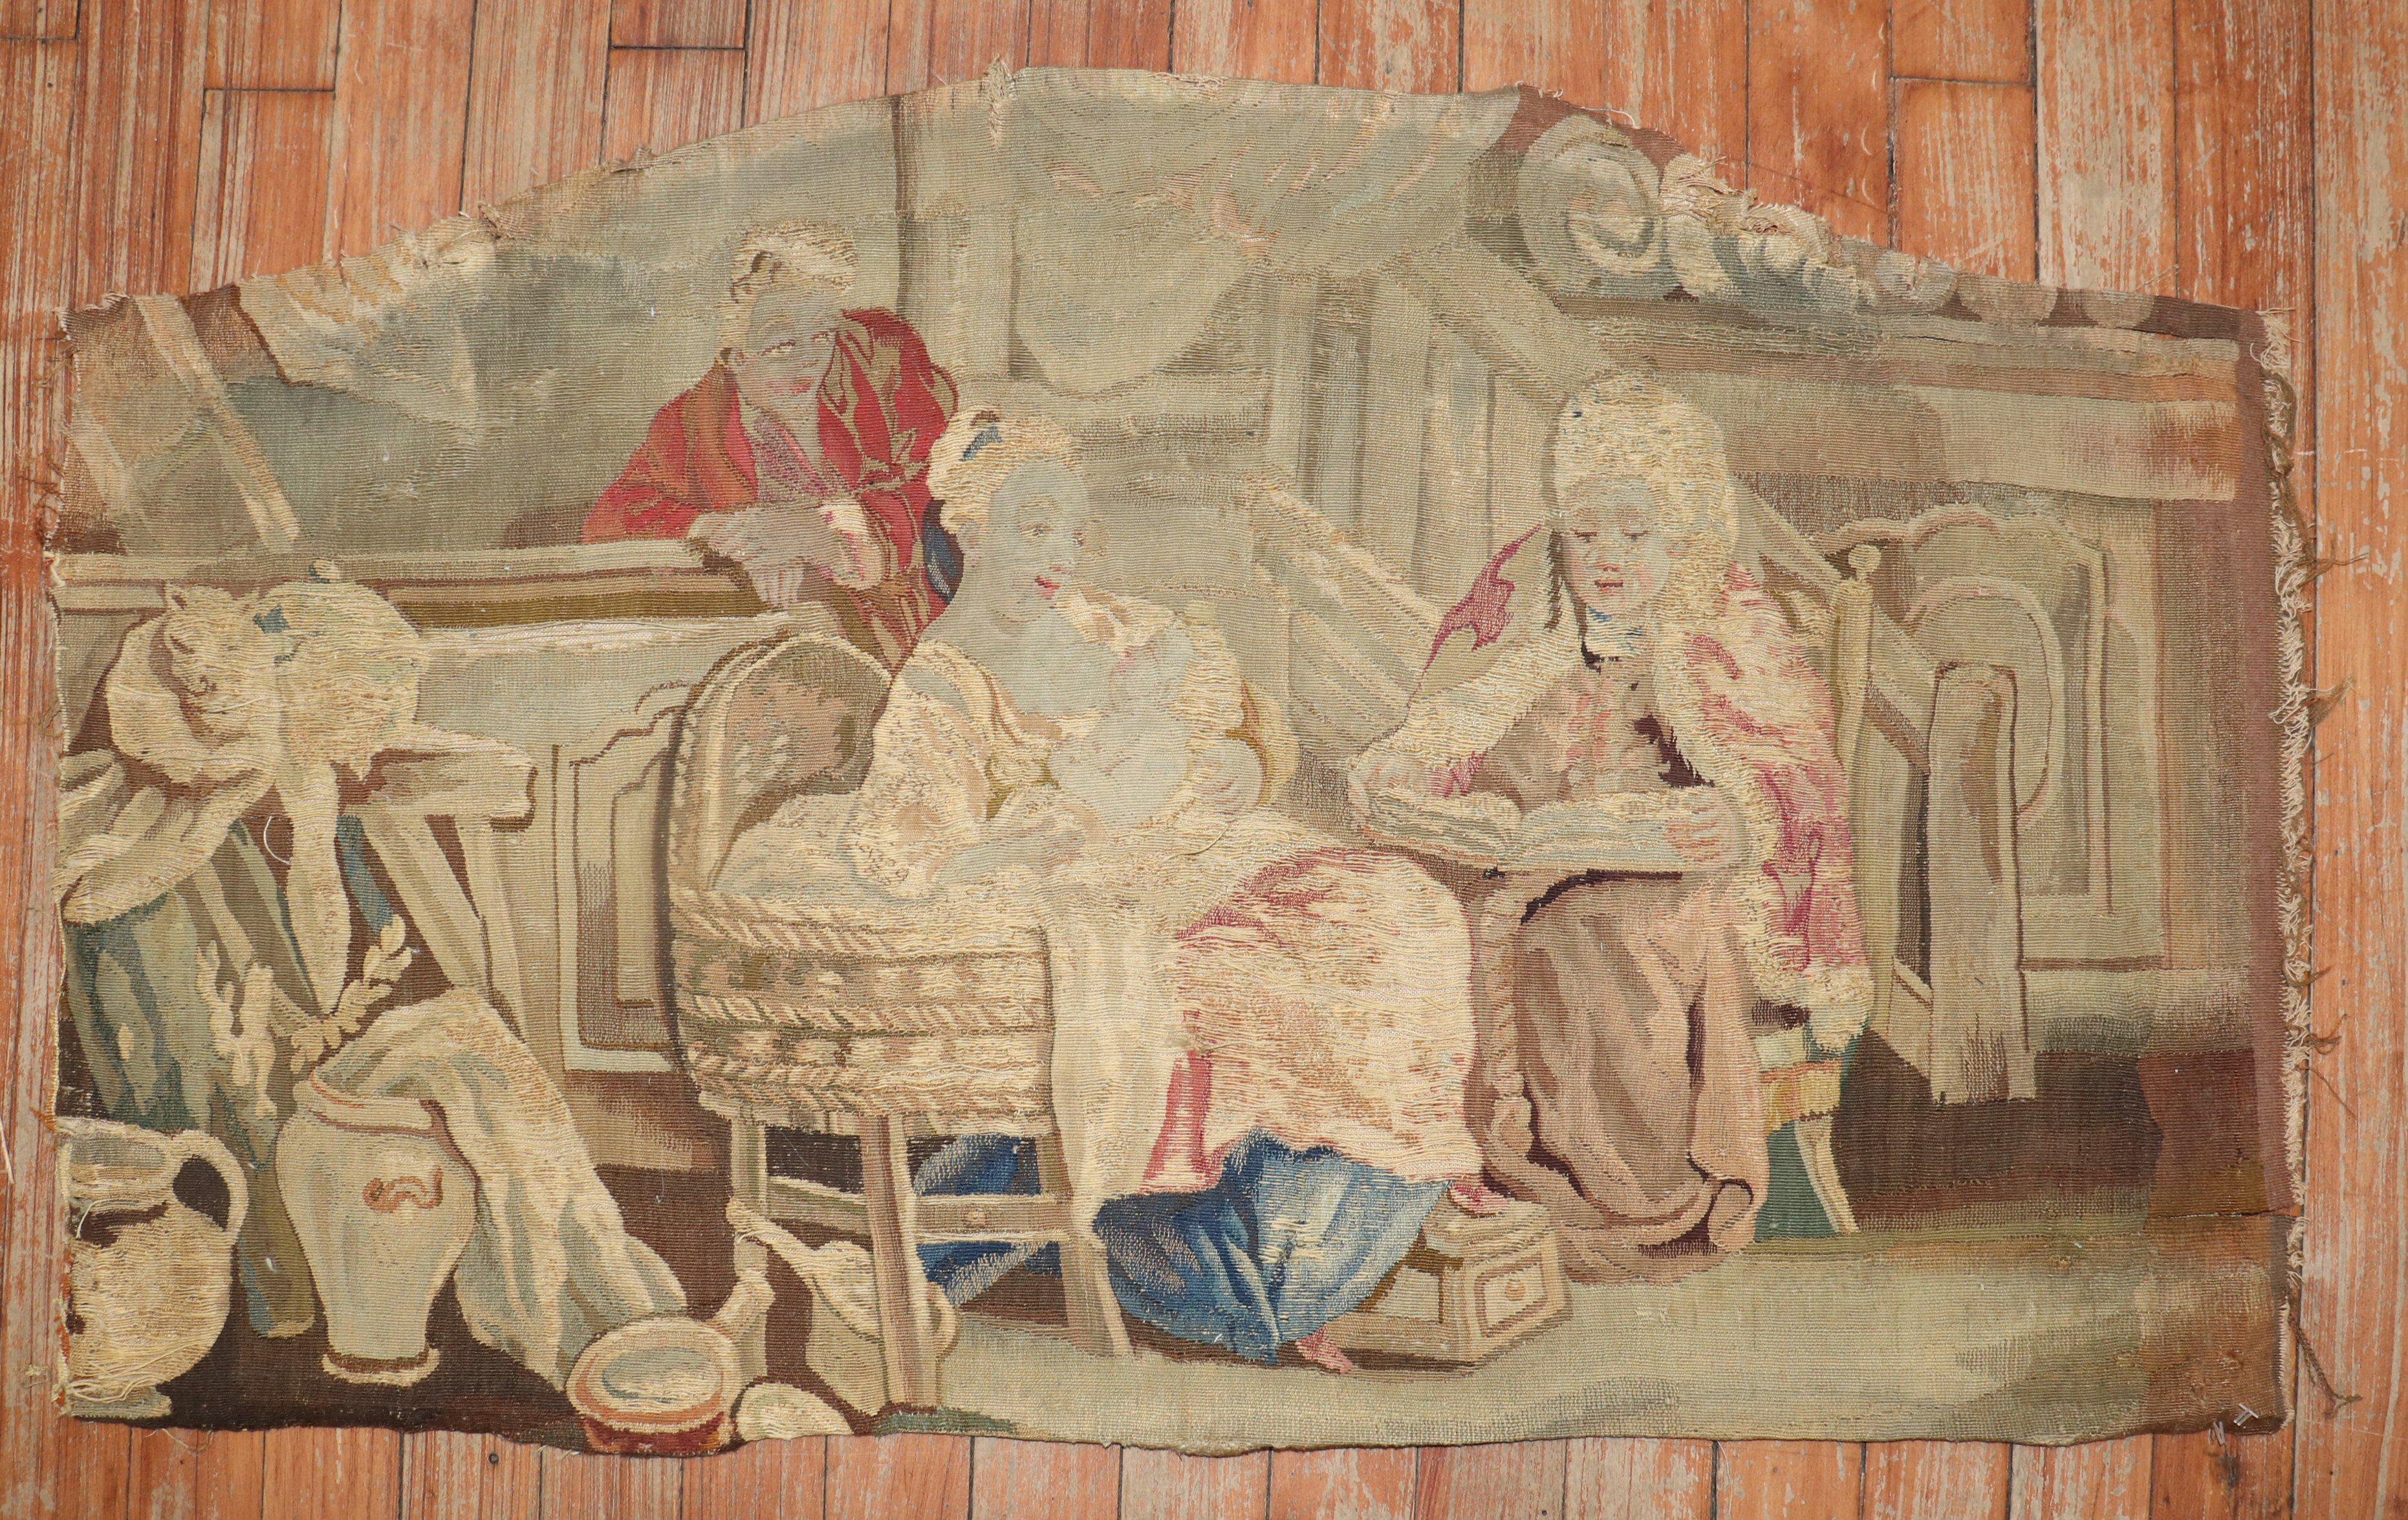 Mitte des 18. Jahrhunderts europäisches Wandteppichfragment. 

Maße: 1'9'' breit x 2'10'' lang.

Wandteppiche sind ein wesentlicher Bestandteil des flämischen Kulturerbes. Die meisten Wandteppiche zeigen religiöse, mythologische und historische